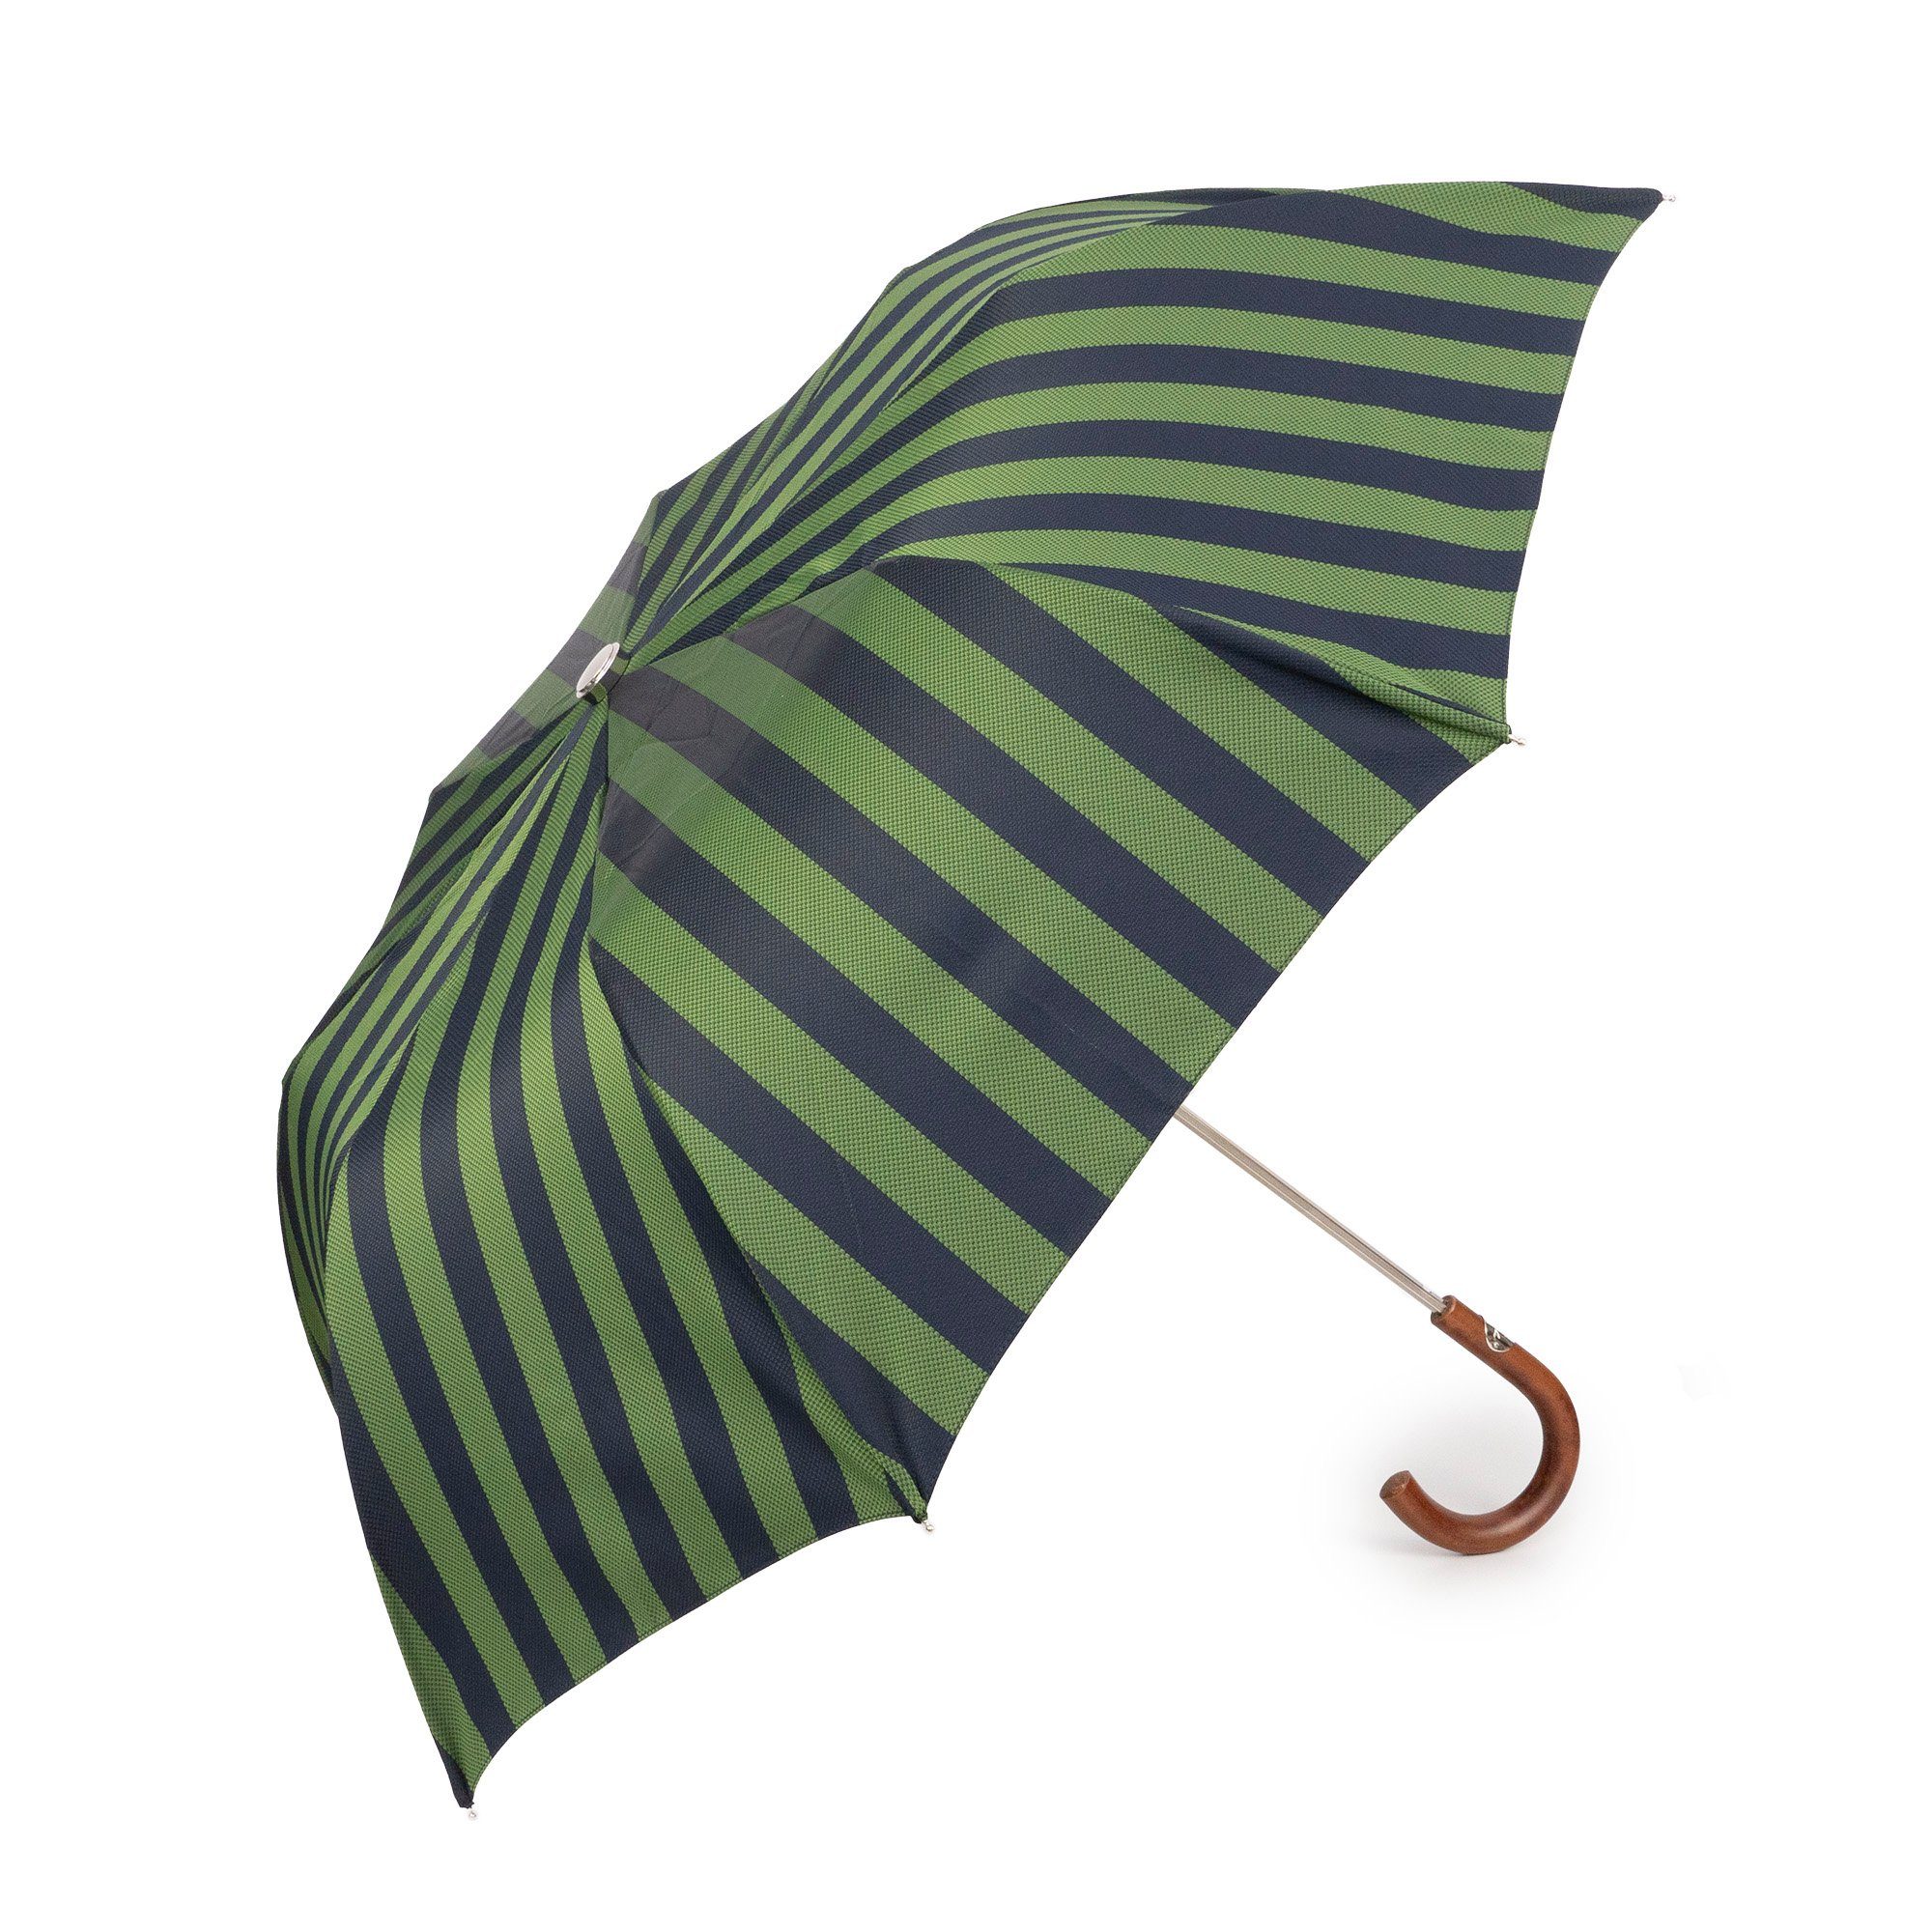 Francesco Maglia Taschenregenschirm, Luxus-Regenschirm, grün, gestreift, Holzgriff, Handmade in Italy